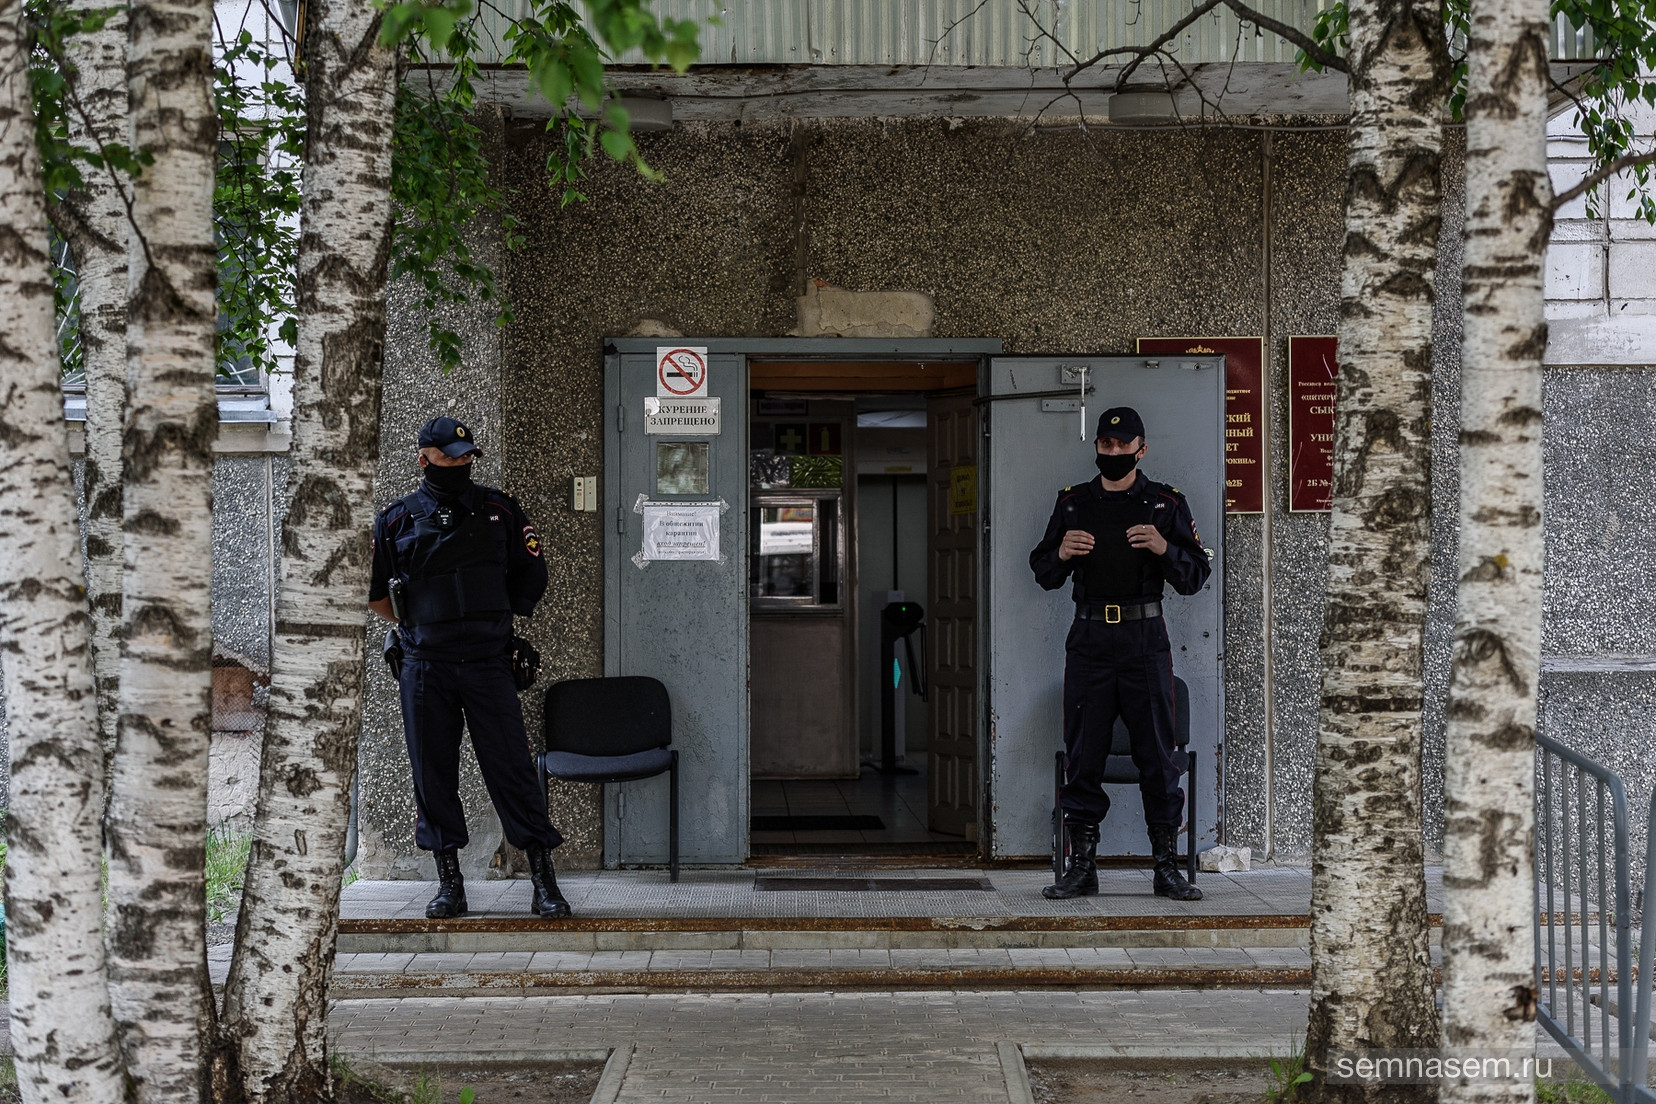 «Мы думали, что под подпись сможем выходить». Полиция из-за коронавируса оцепила общежитие Сыктывкарского госуниверситета